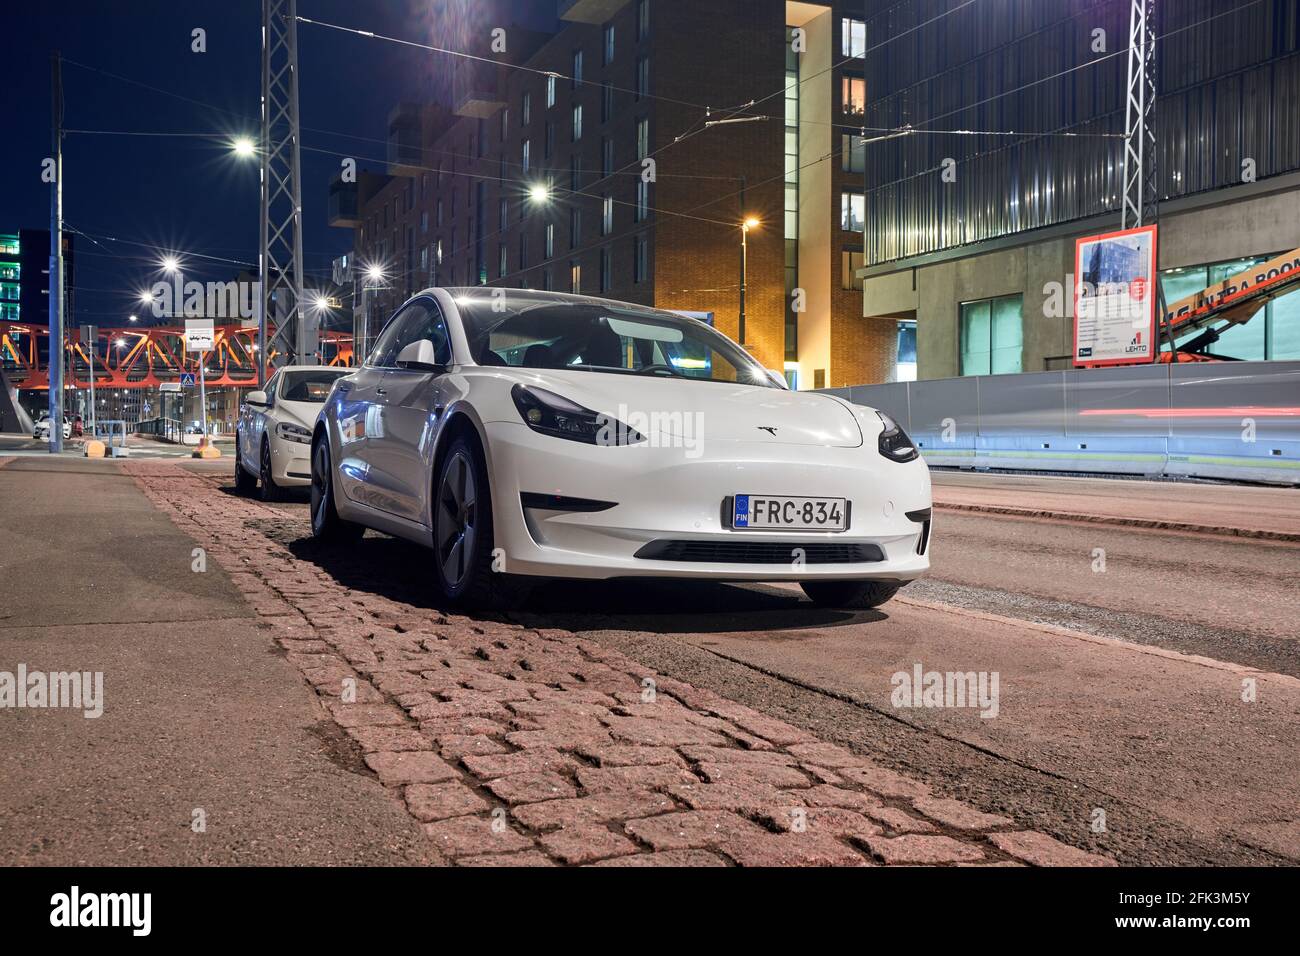 Finlande, Helsinki - 20 avril 2021 : le modèle 3 de Tesla de couleur blanche dans la rue de Jatkasaari, dans le quartier d'Helsinki. Banque D'Images